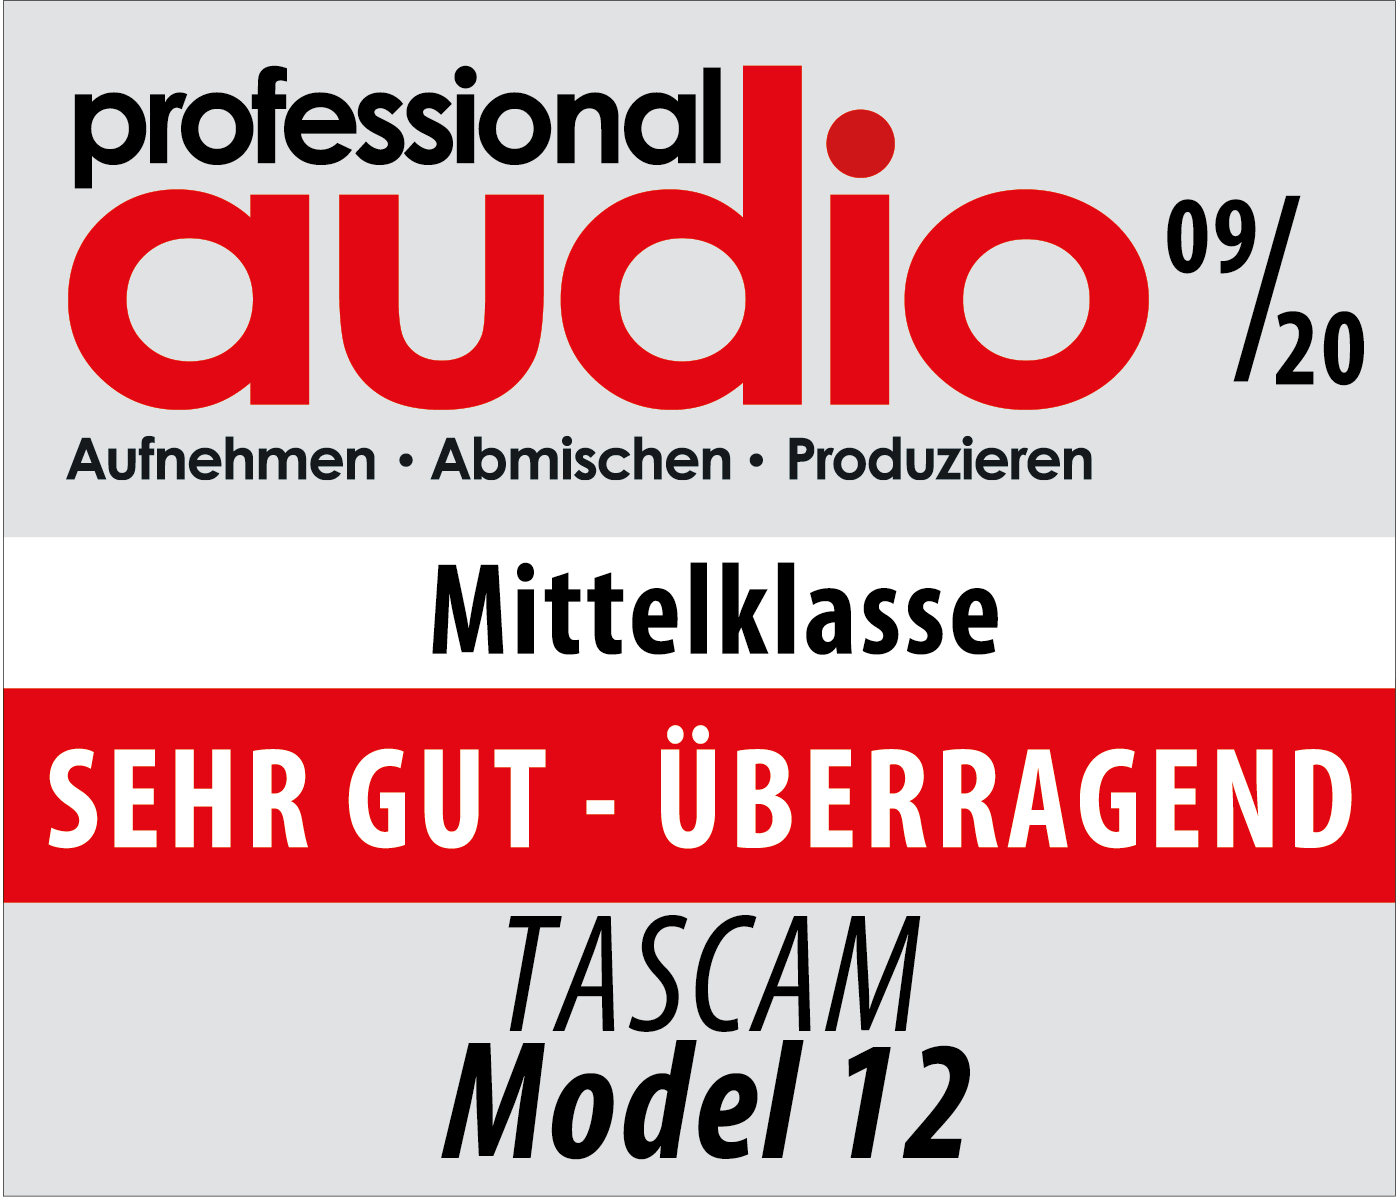 Professional Audio zeichnet das Tascam Model 12 mit dem Prädikat 'SEHR GUT - ÜBERRAGEND -' aus